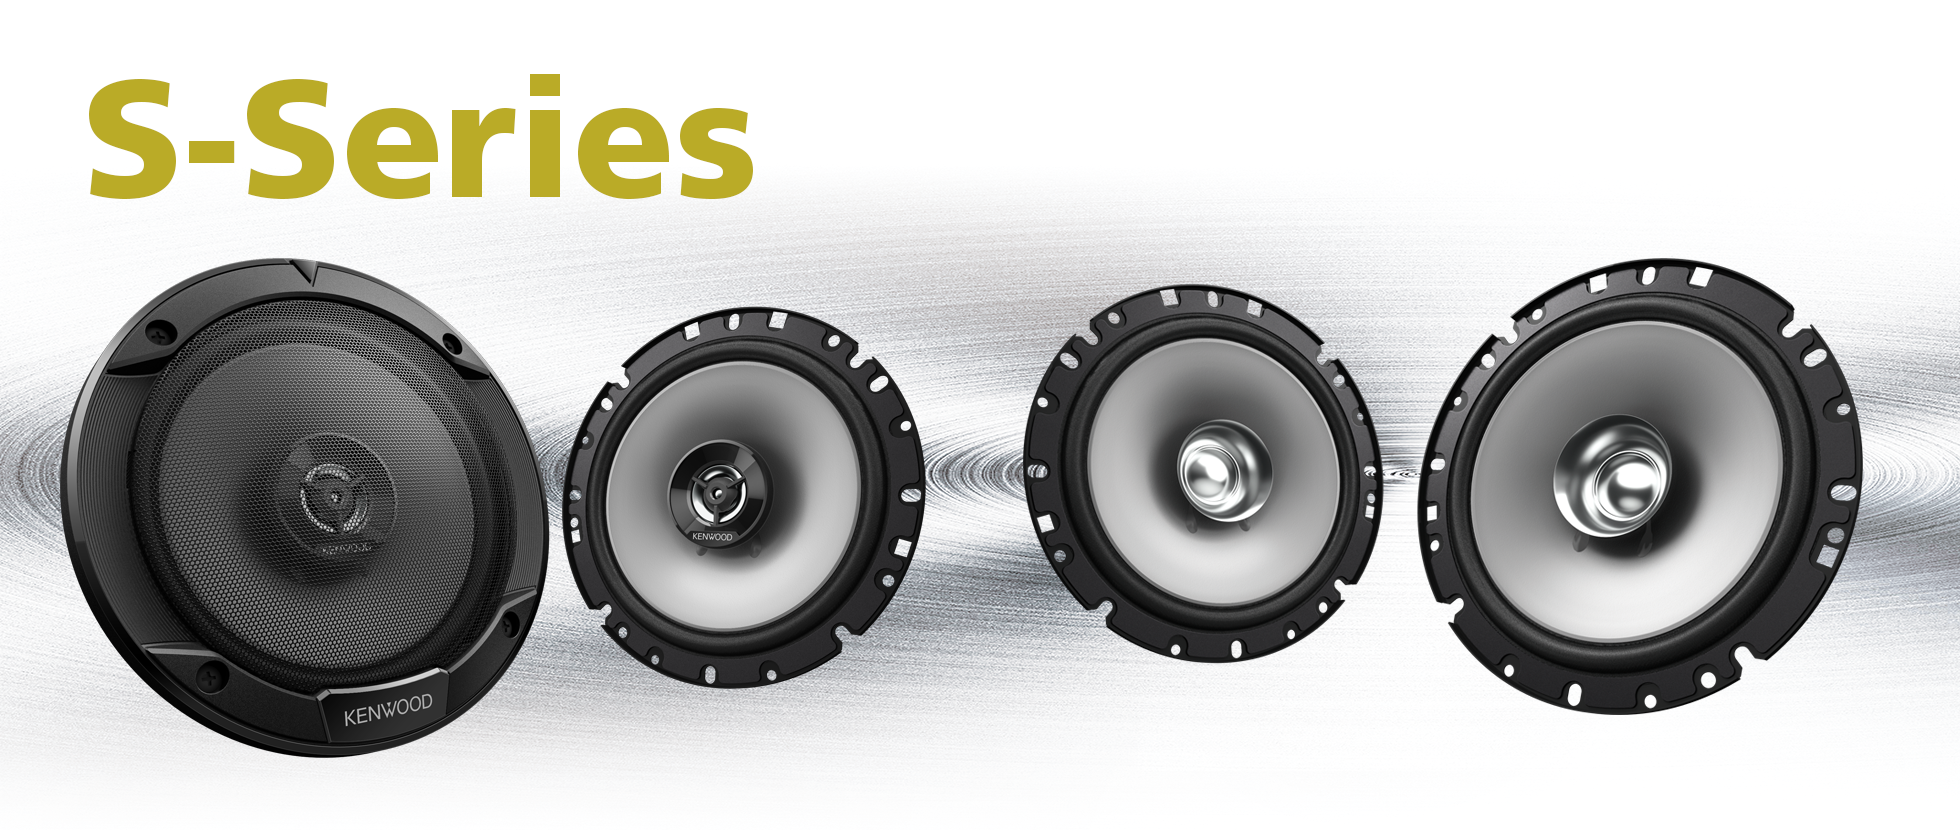 S-series speakers